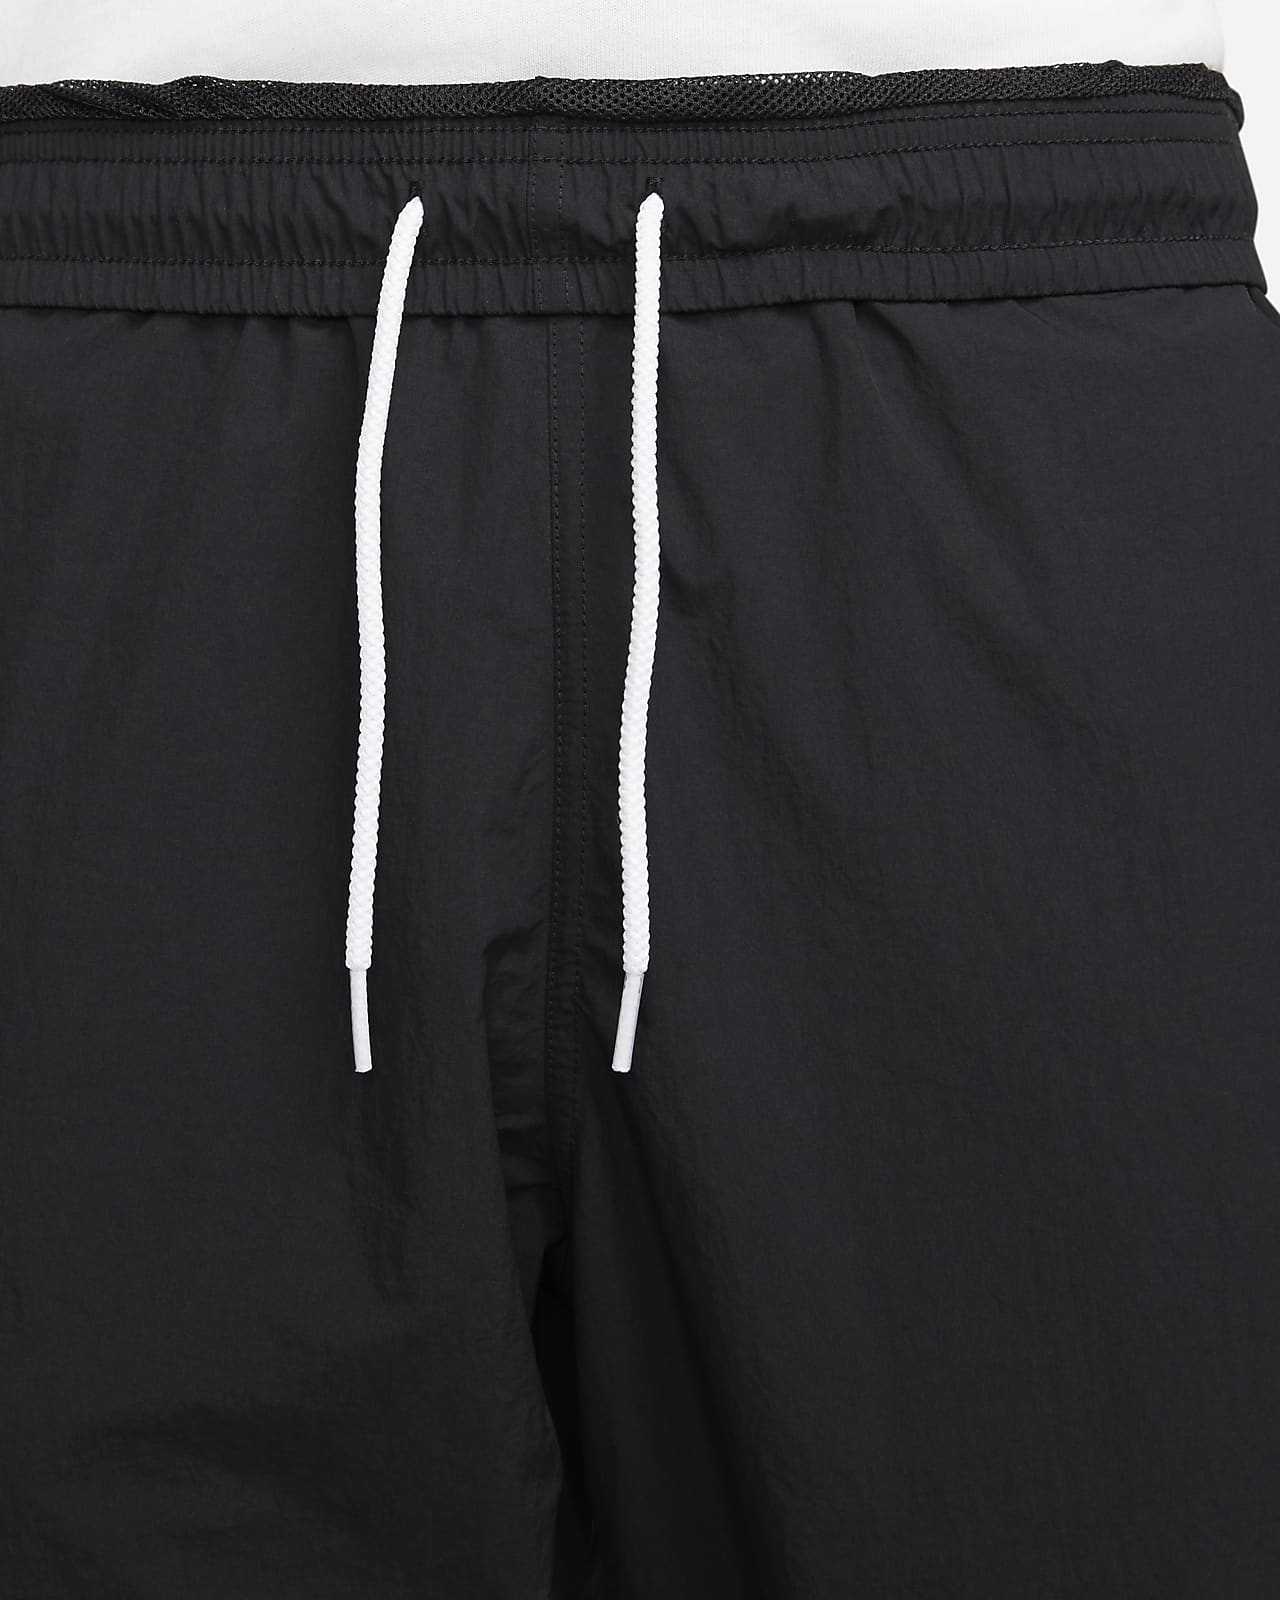 Nike Sportswear Solo Swoosh Men's Tracksuit Bottoms. Nike VN